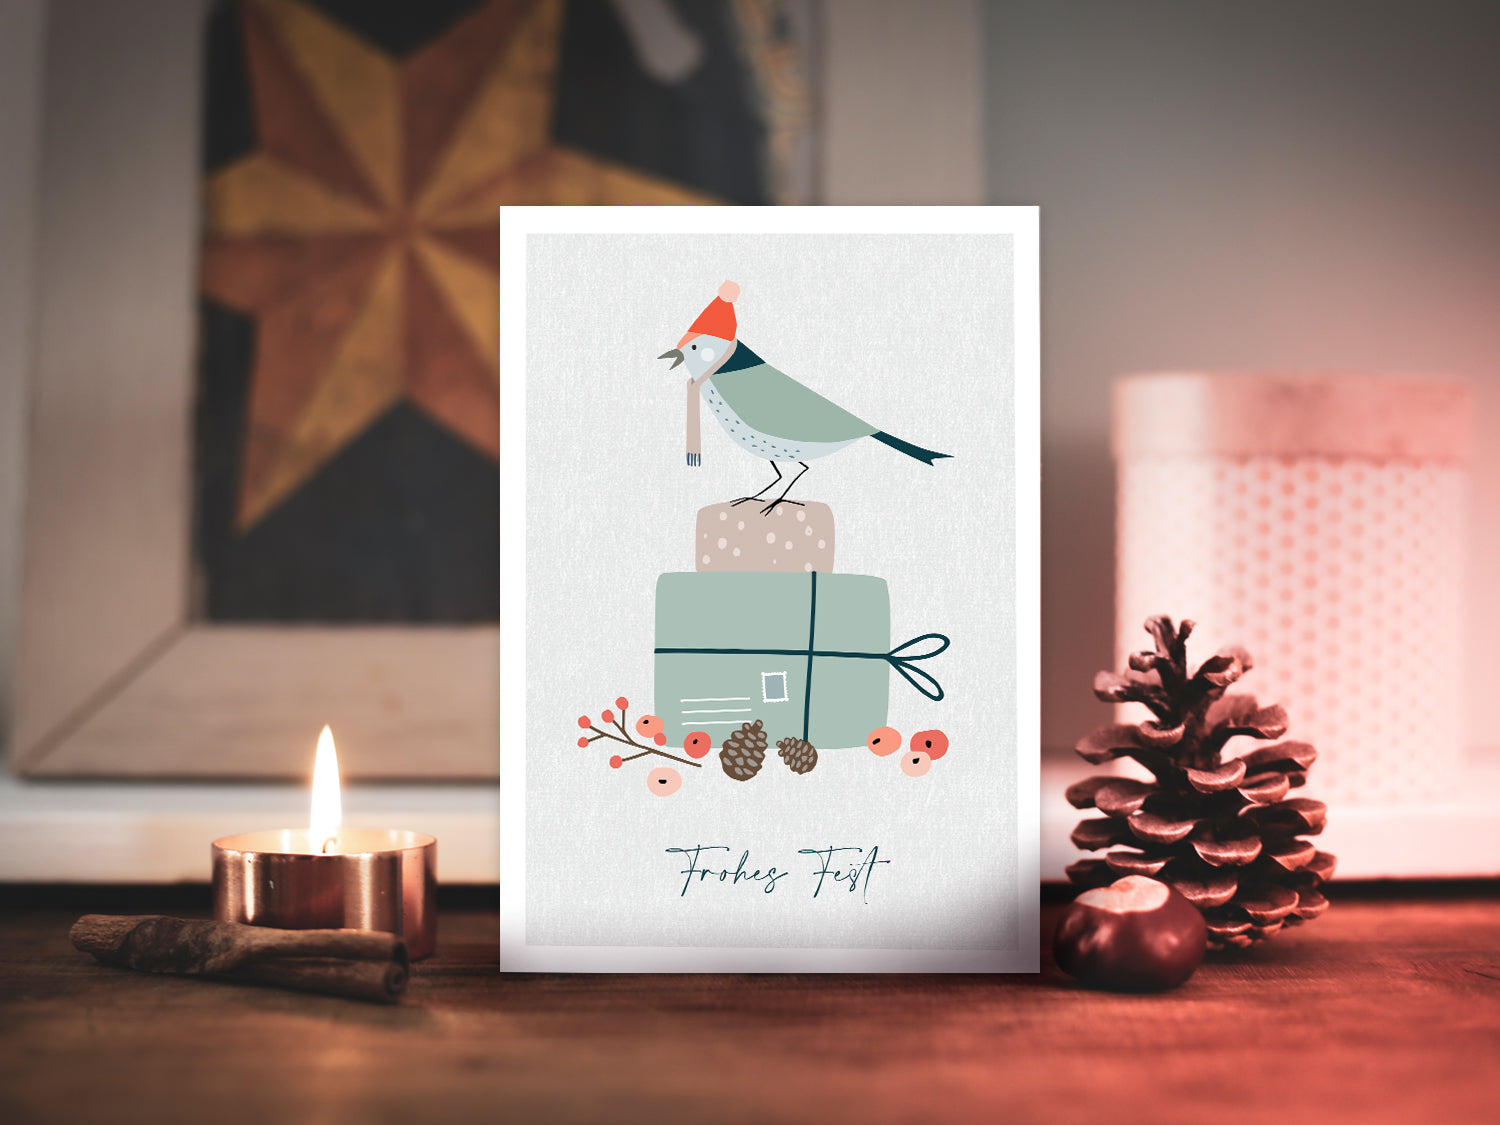 Weihnachtskarte im Scandi Nordic Stil als kleiner Postkartengruß, illustriert mit einem Vogel auf einem Geschenk und dem Wunsch nach einem "Frohen Fest".  Postkarte: DIN A6 Druck: 4/1-farbig, Offsetdruck   Karton: Offsetkarton, 400g/qm (natürliche Haptik)   Briefumschlag: weiß, nassklebend